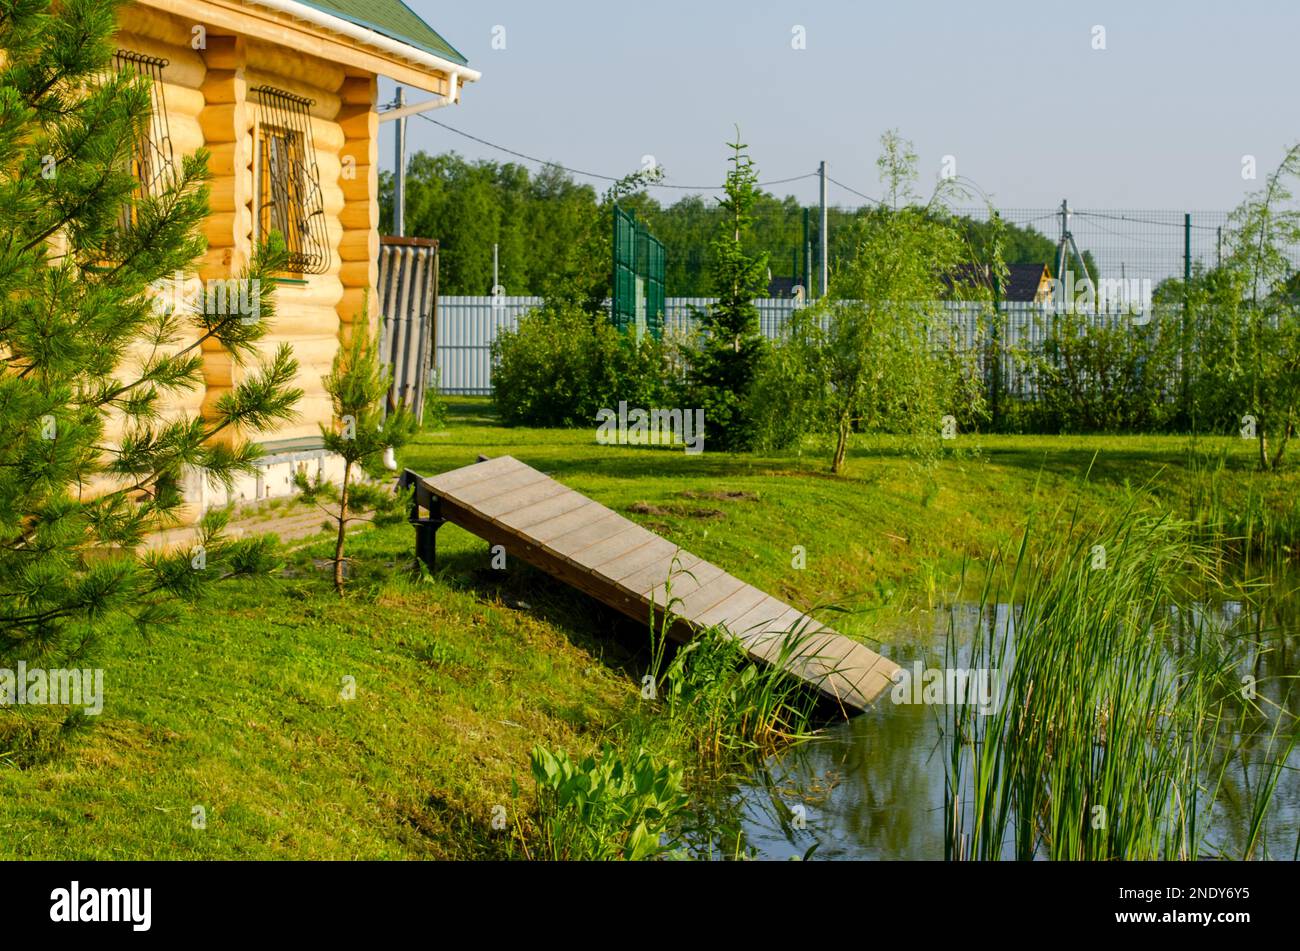 Sauna cottage in legno con discesa nell'acqua del lago su un terreno giardino tra le piante in primavera. Foto Stock